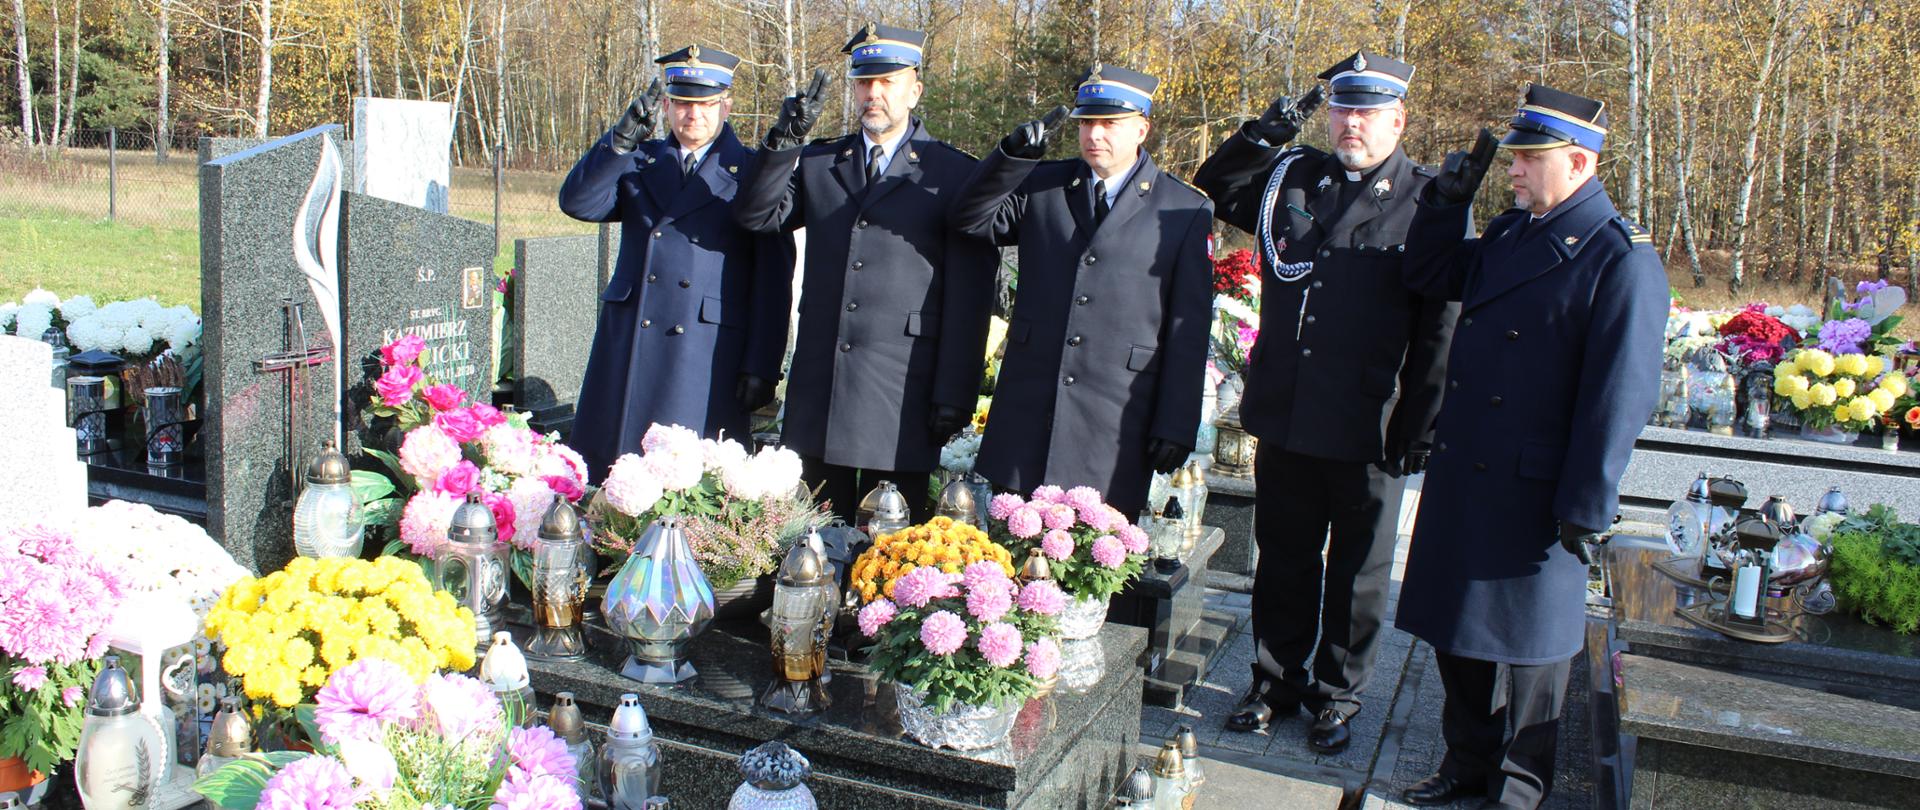 Zdjęcie przedstawia funkcjonariuszy Państwowej Straży Pożarnej oraz kapelana ubranych w mundury wyjściowe, którzy oddają honor nad grobem zmarłego strażaka. W tle widoczne są nagrobki na których znajdują się znicze oraz kwiaty.